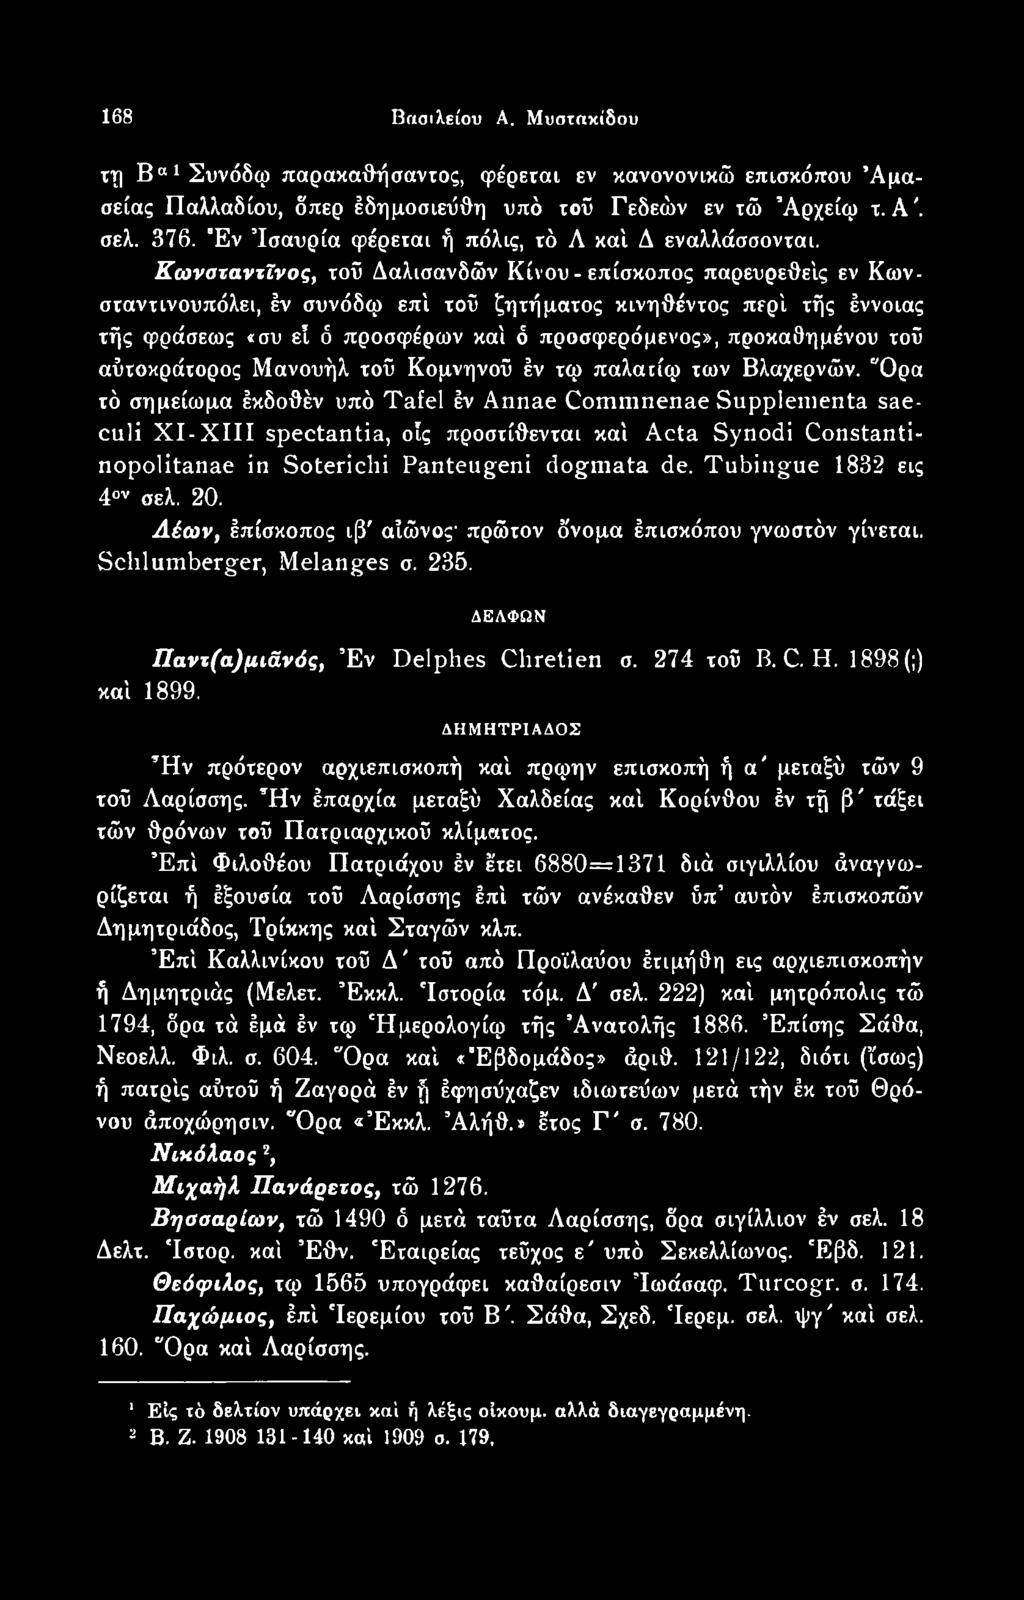 "Ορα τό σημείωμα έκδοθέν υπό Tafel έν Annae Commnenae Supplenienta saeculi XI-XIII spectantia, οϊς προστίθενται καί Acta Synodi Constantinopolitanae in Soterichi Panteugeni dogmata de.